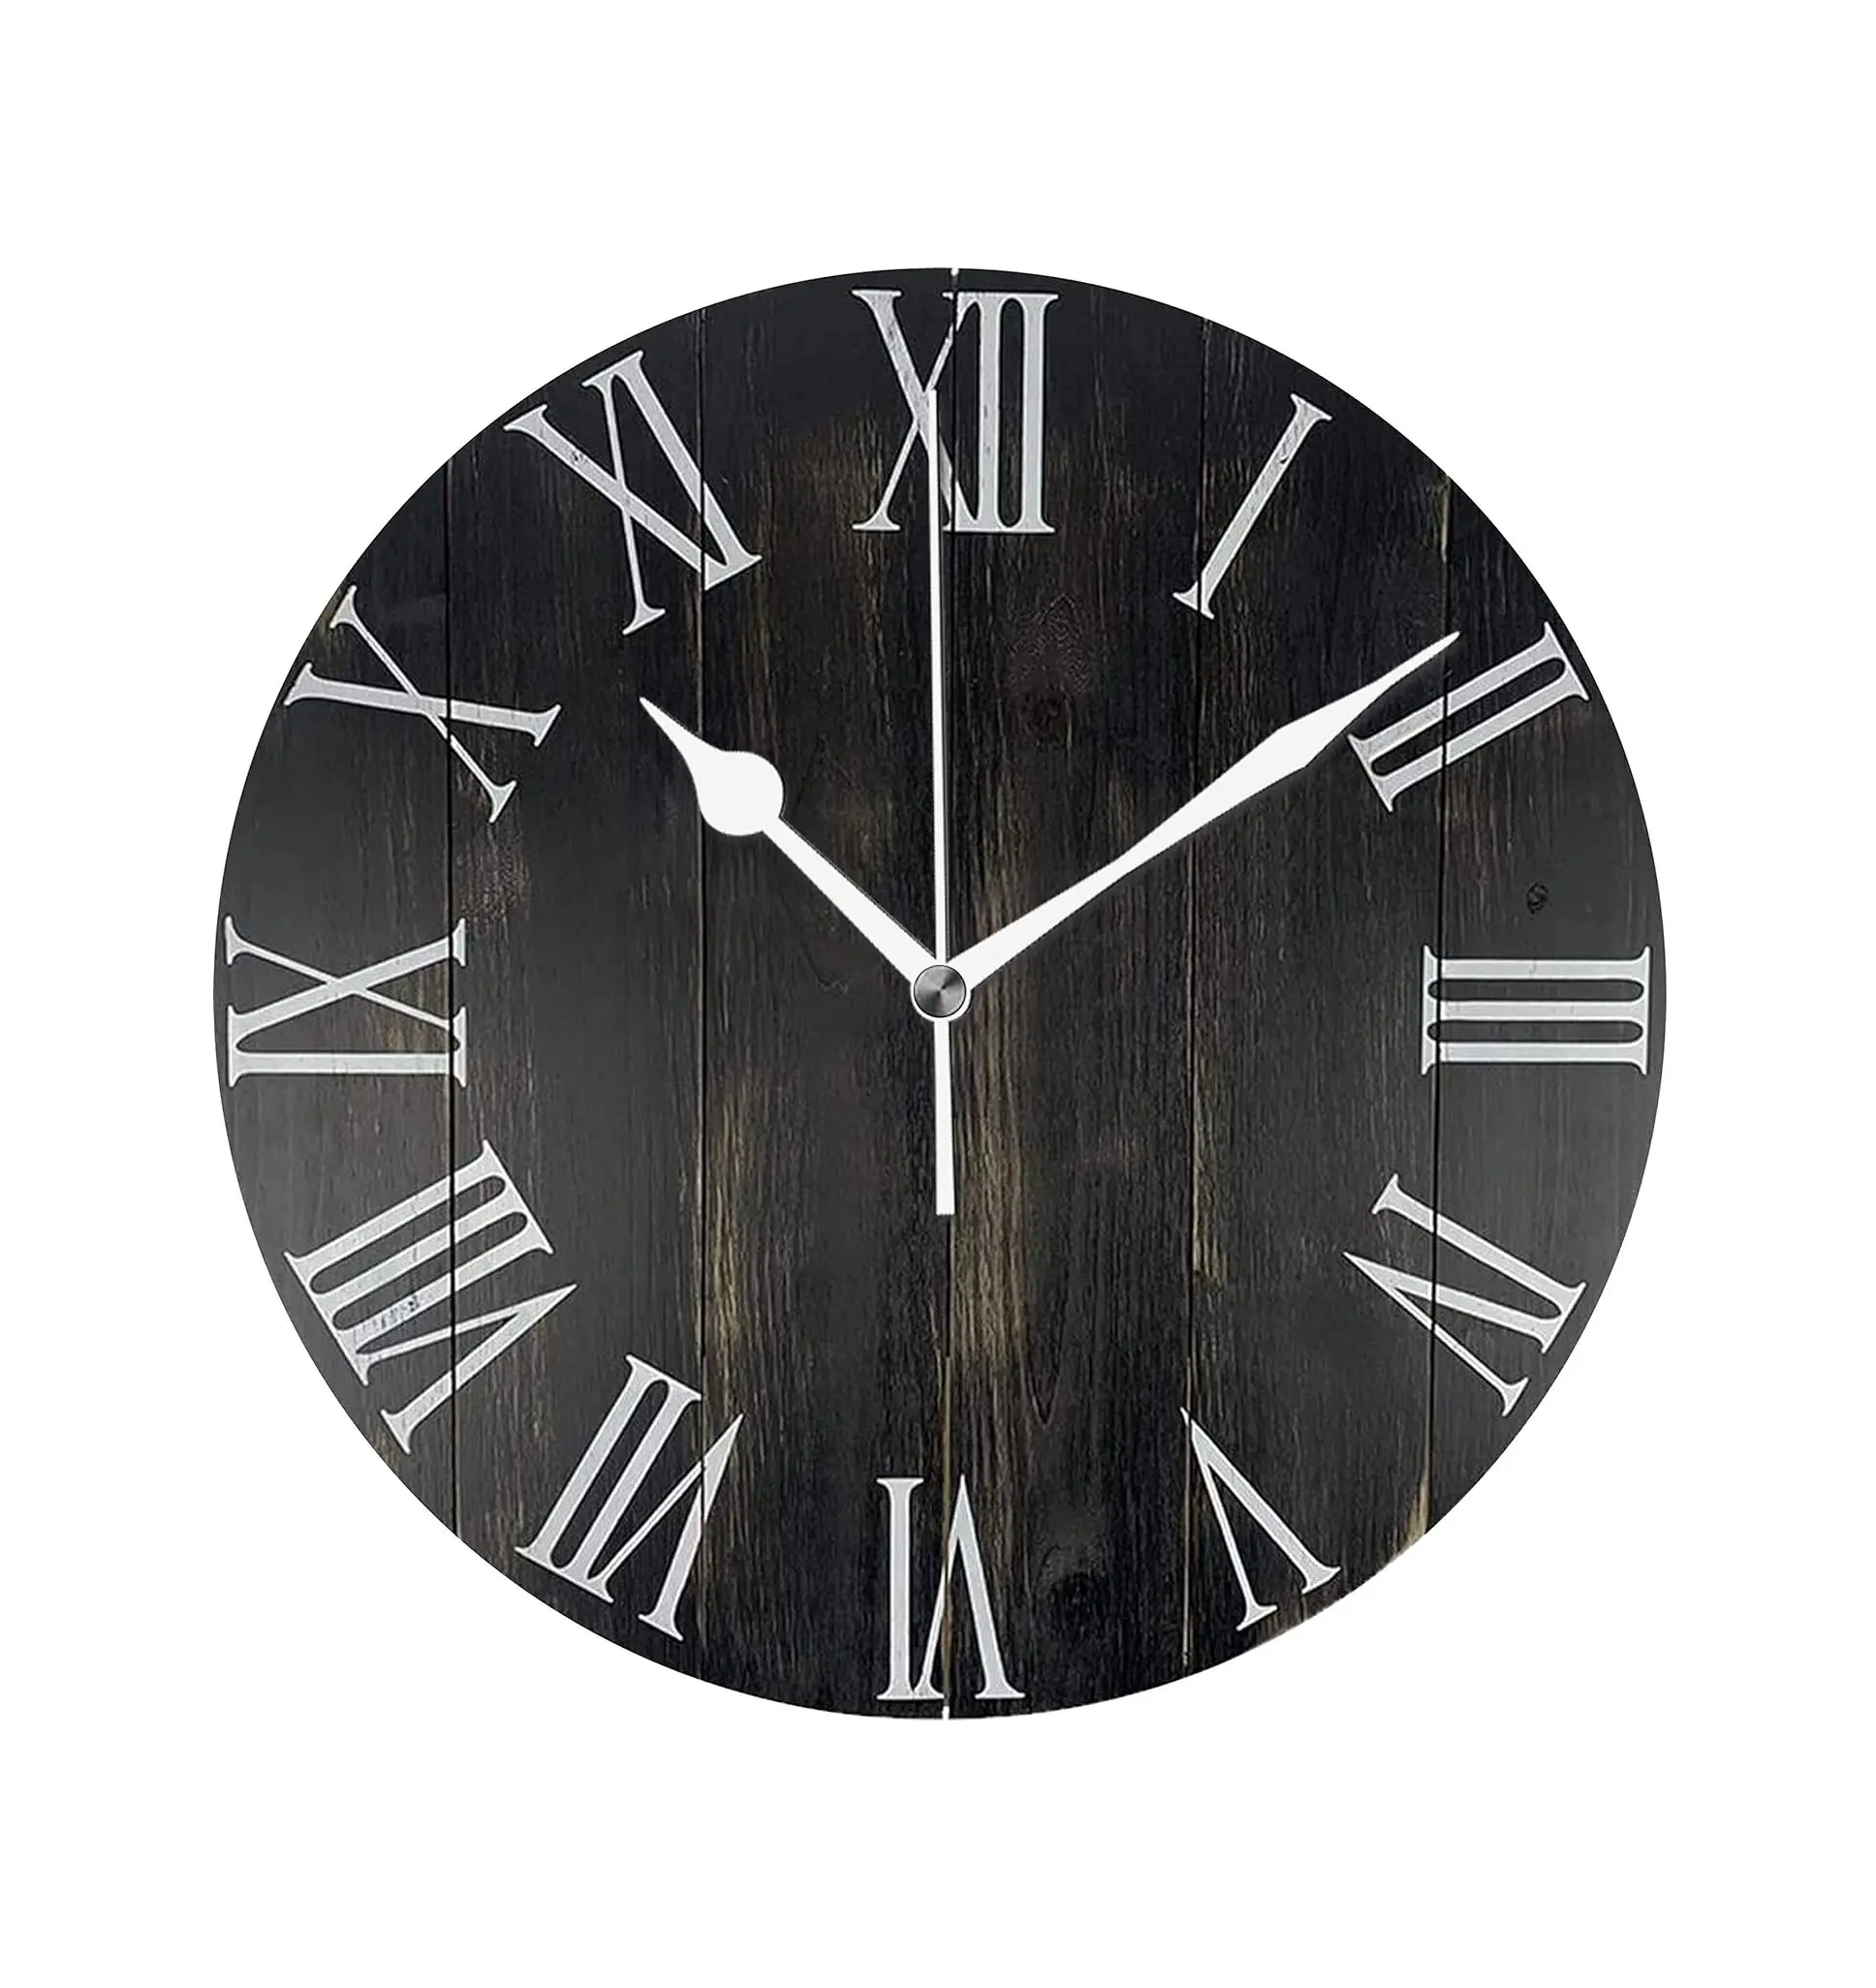 Reloj de pared de granja de madera rústica, negro, 14 pulgadas, silencioso, sin tictac, funciona con pilas, decoración del hogar